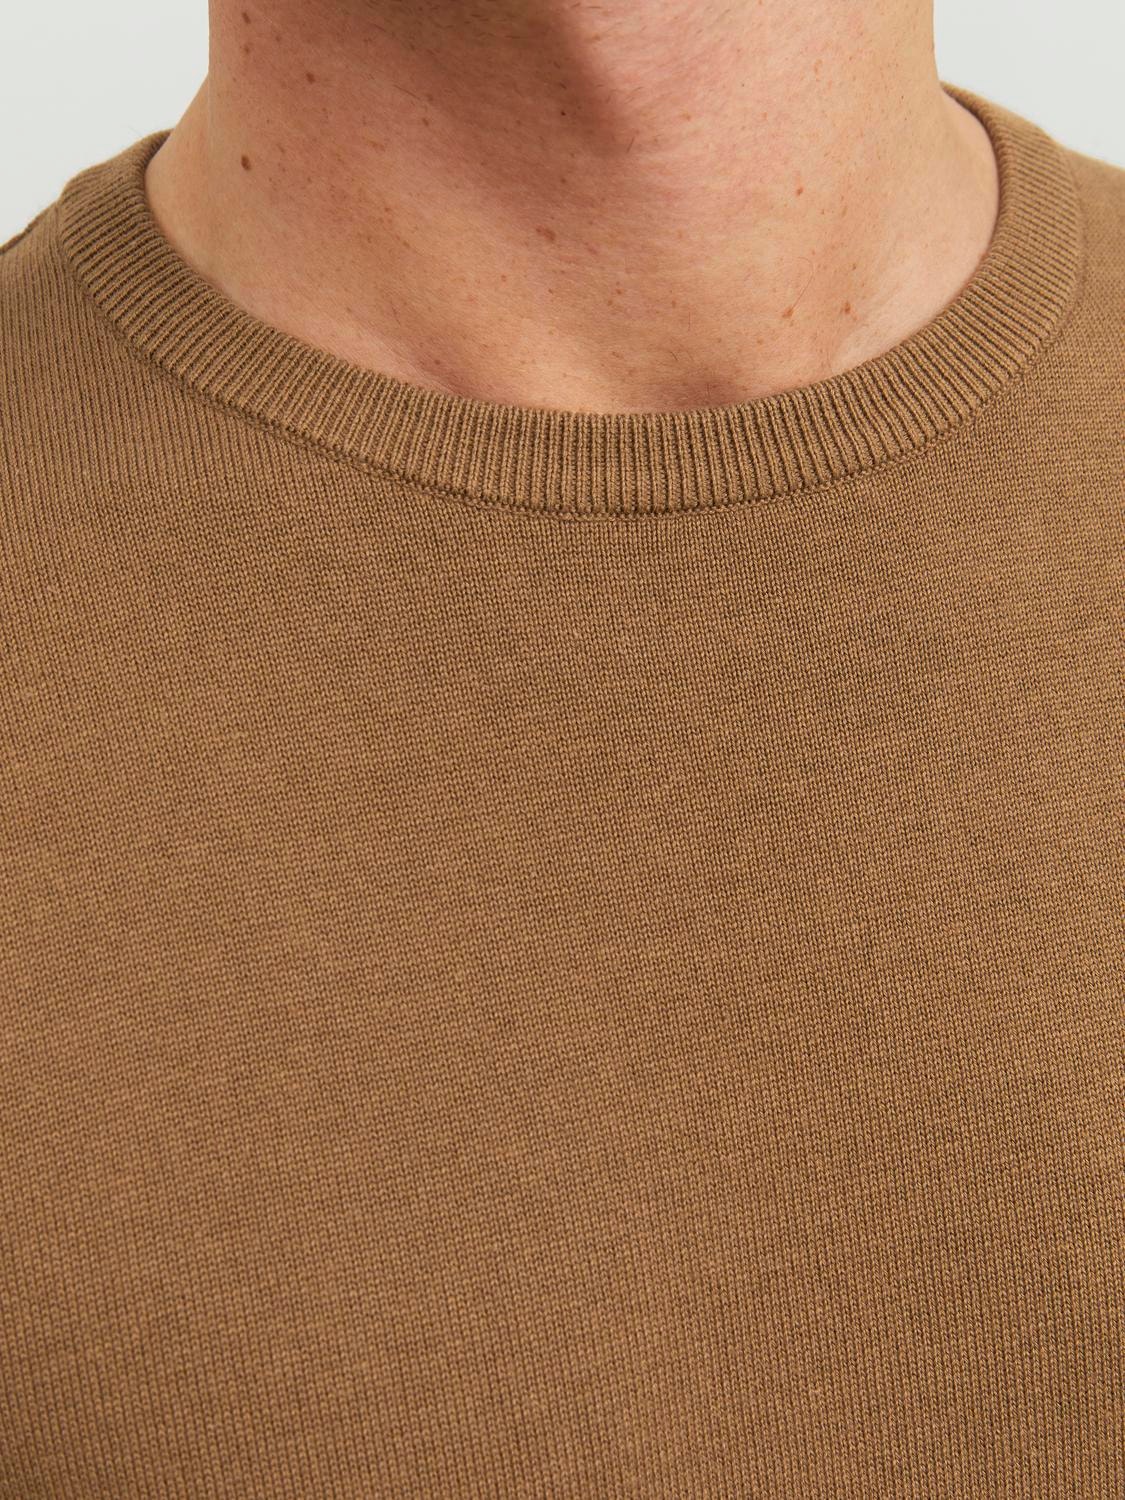 Jack & Jones Plain Knitted pullover -Otter - 12137190